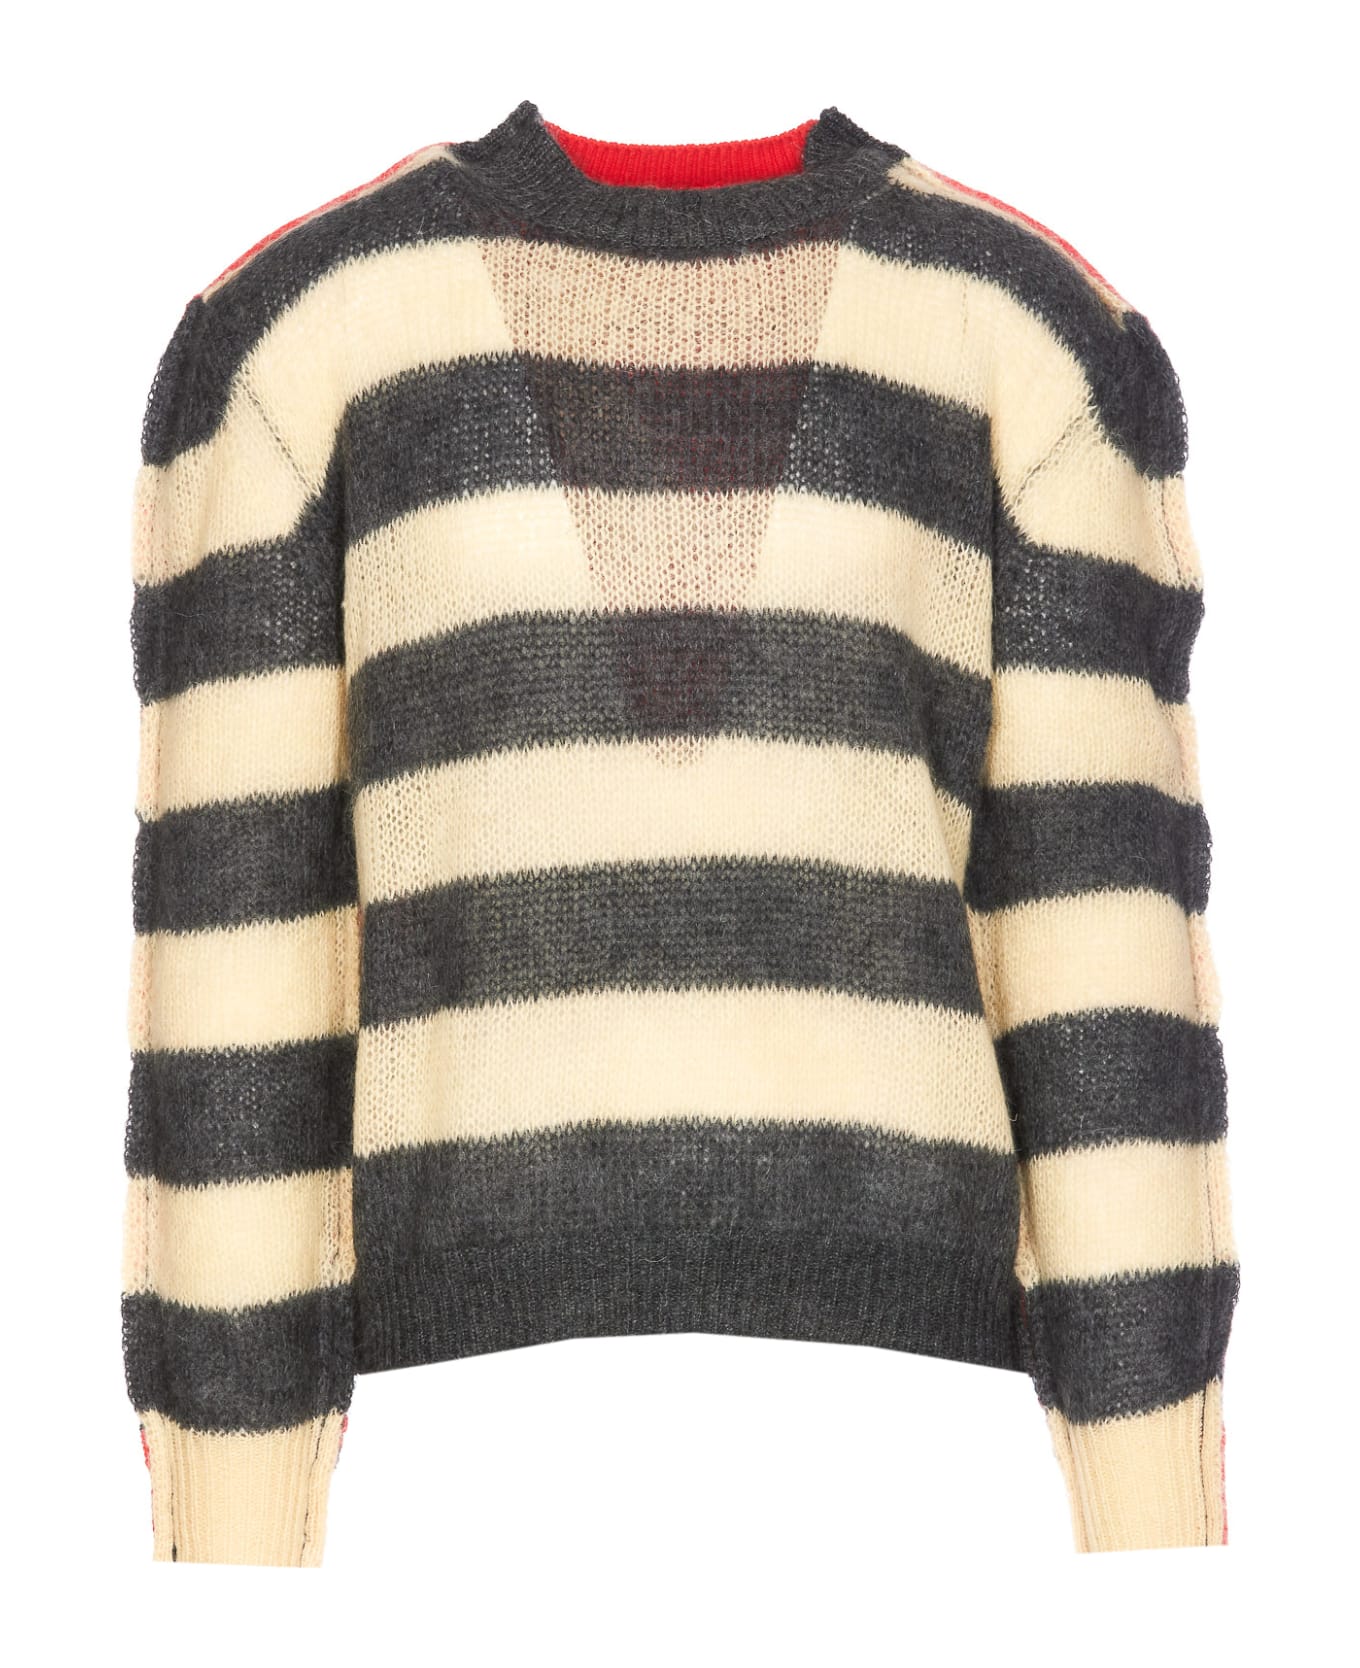 Marni Striped Sweater - Mxn38